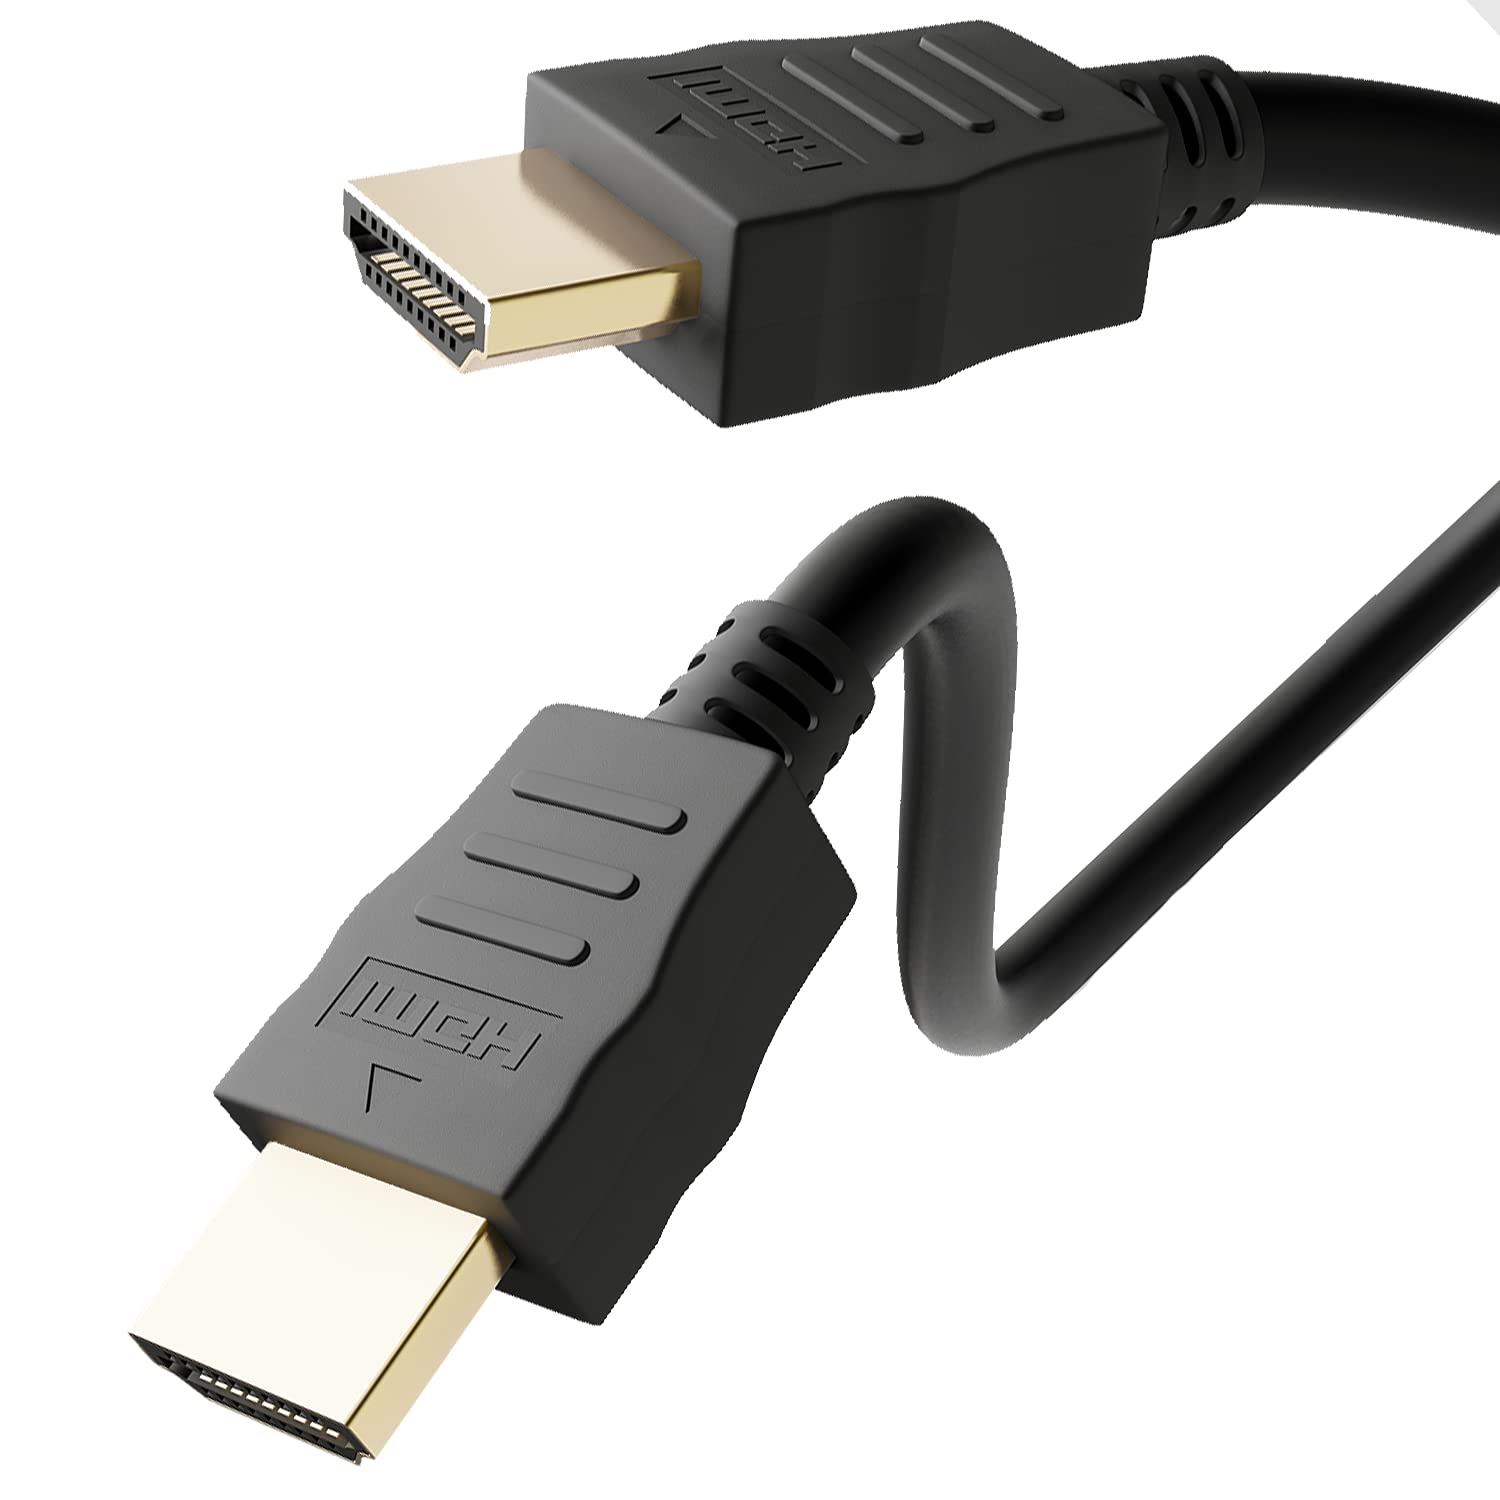 Goobay 38523 High-Speed-HDMI Kabel mit Ethernet, 18 Gbit/s - HDMI - Ultra HD bis 4K@60Hz und 3D-Wiedergabe bei 4K - Ultra HD, HDR , HEC, 3D, eARC, HDCP, Ethernet - 2.0 Series